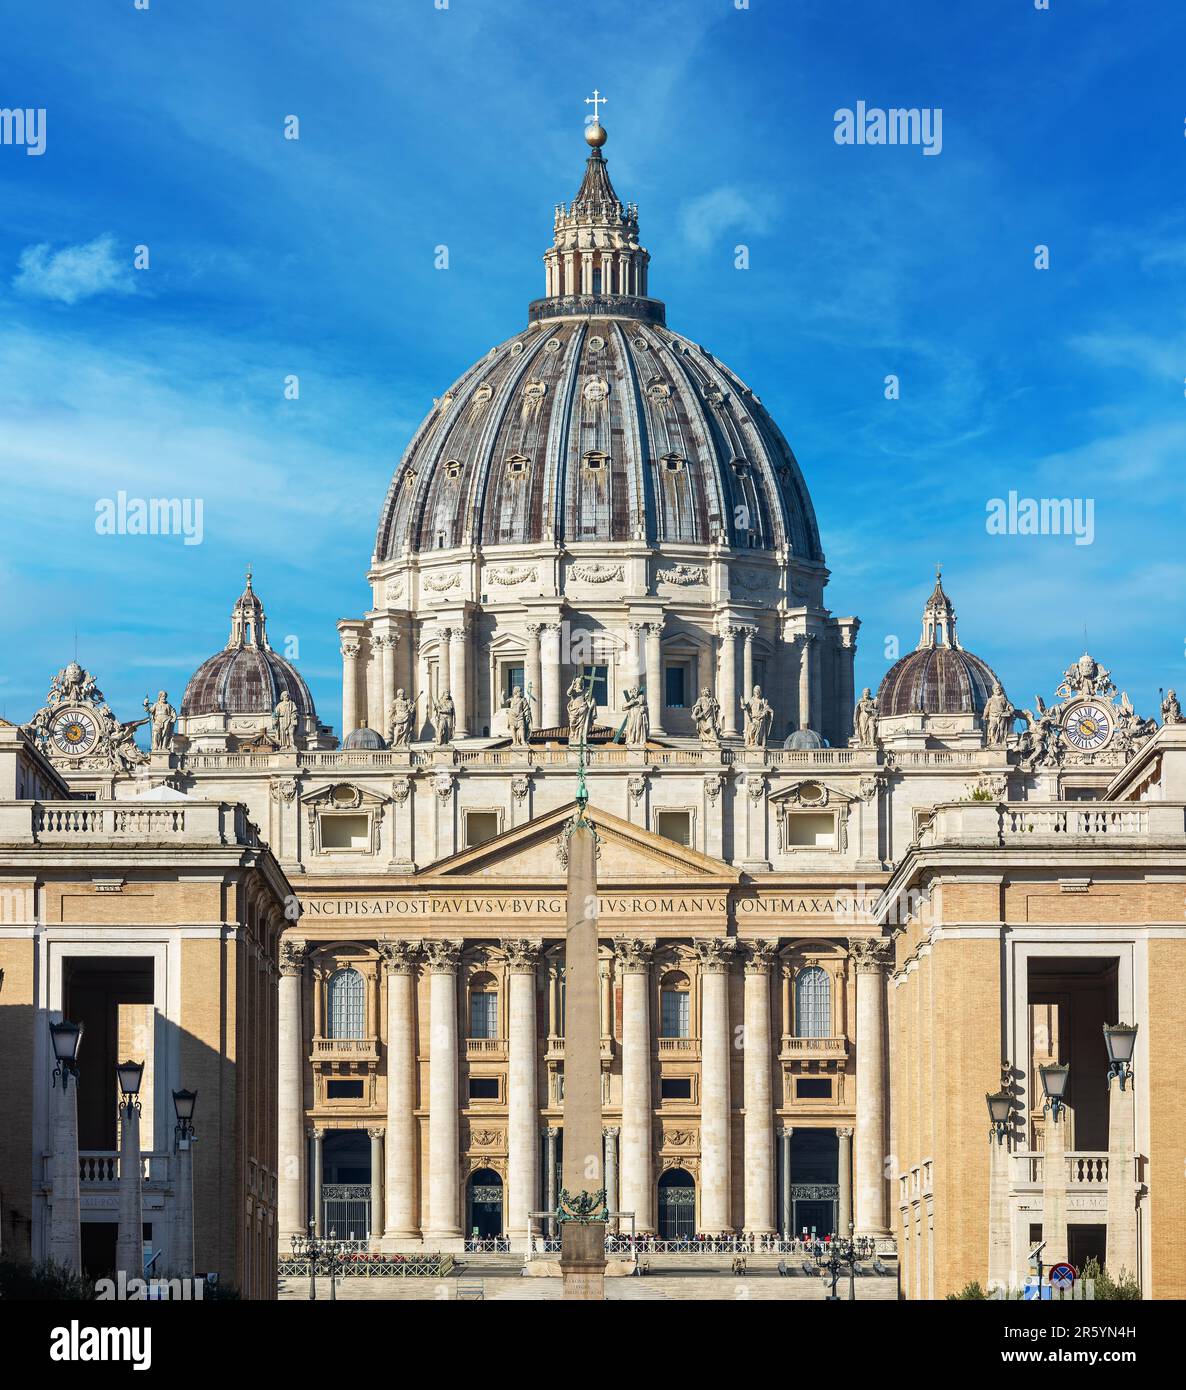 Fassade der berühmten päpstlichen Basilika (auch bekannt als Petersdom) unter blauem Himmel im Vatikan. Stockfoto